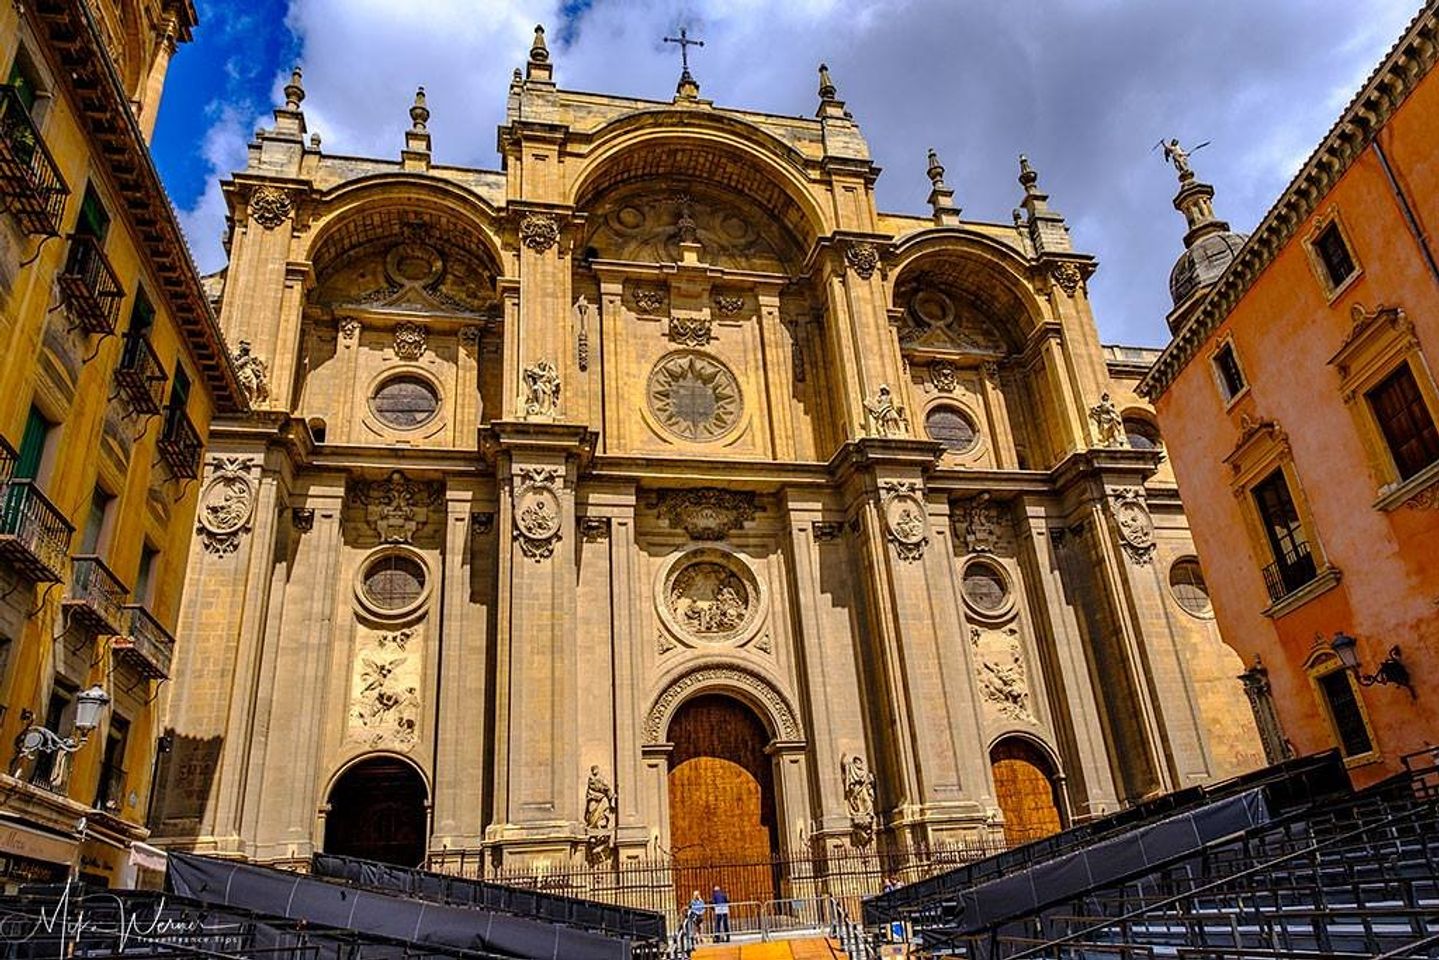 Explorez la beauté immaculée de la cathédrale de Granade au Nicaragua.